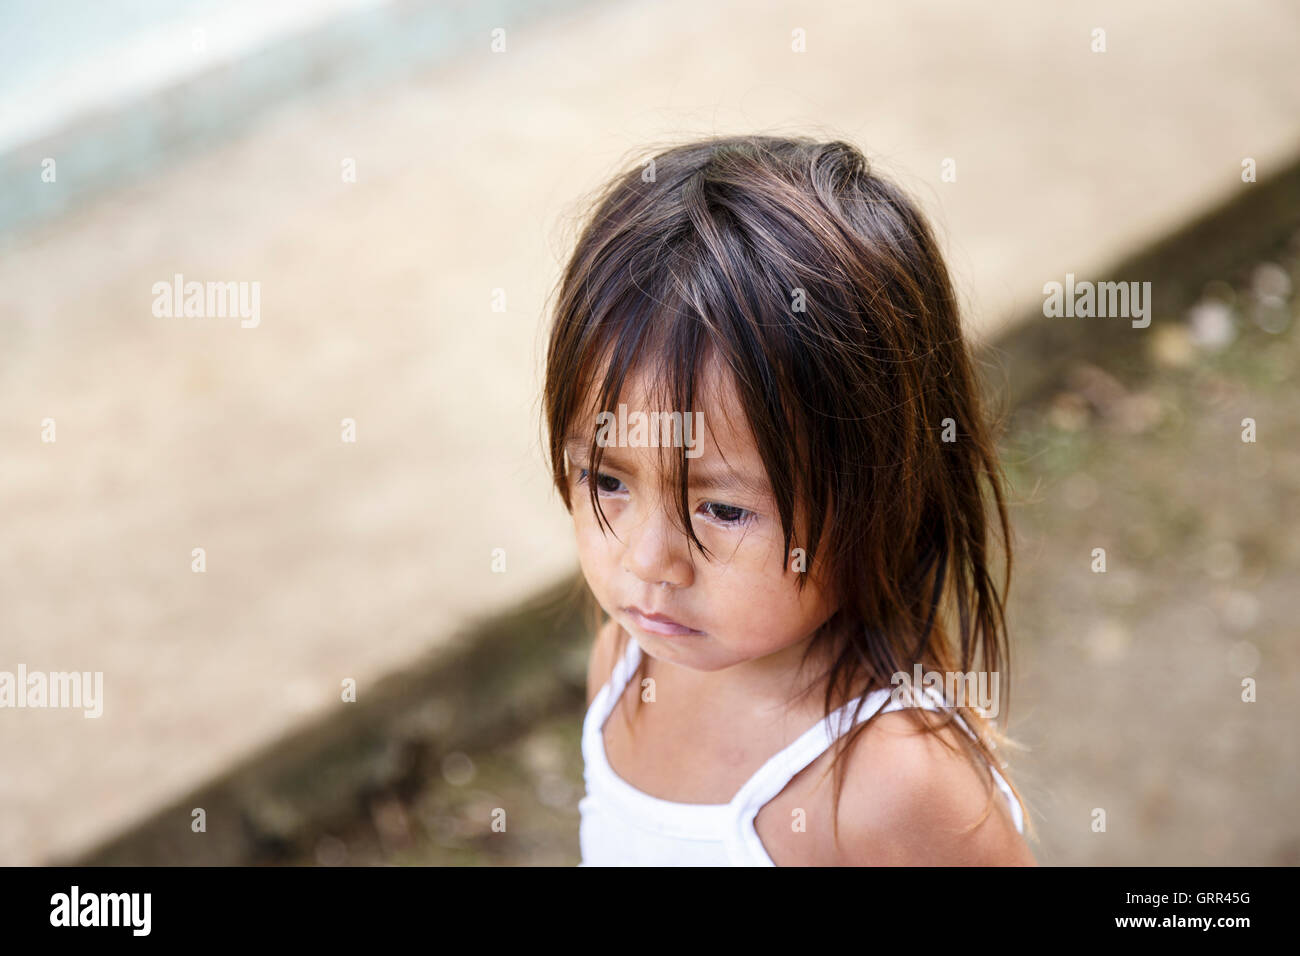 Risultati immagini per bambino indio di 4 anni oresso il fiume Araguari ?